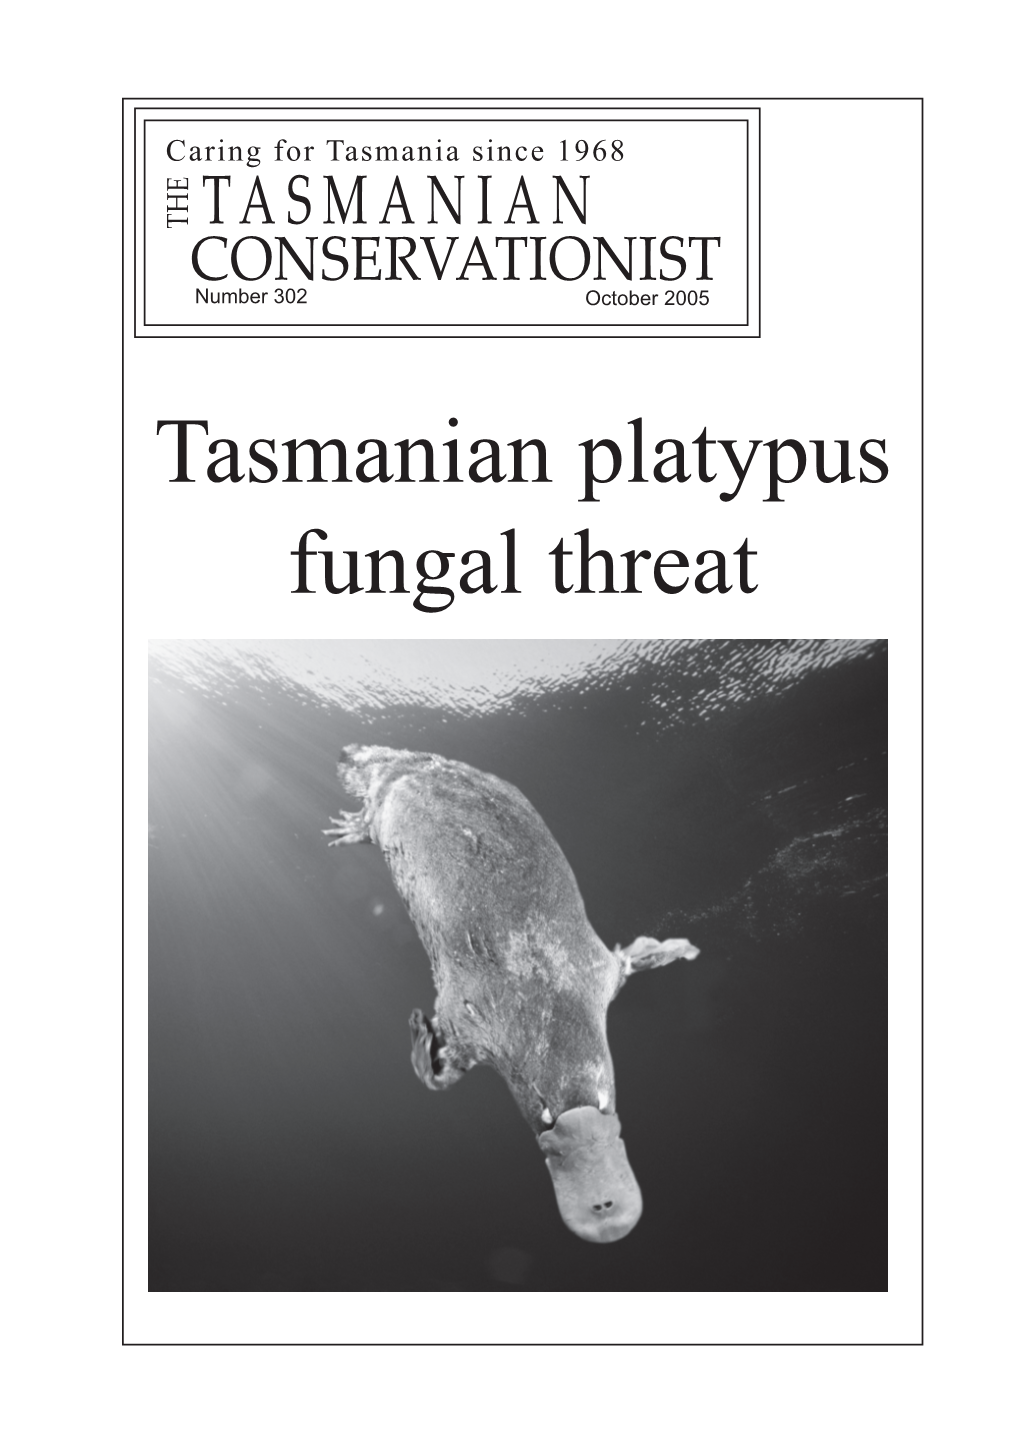 Tasmanian Platypus Fungal Threat